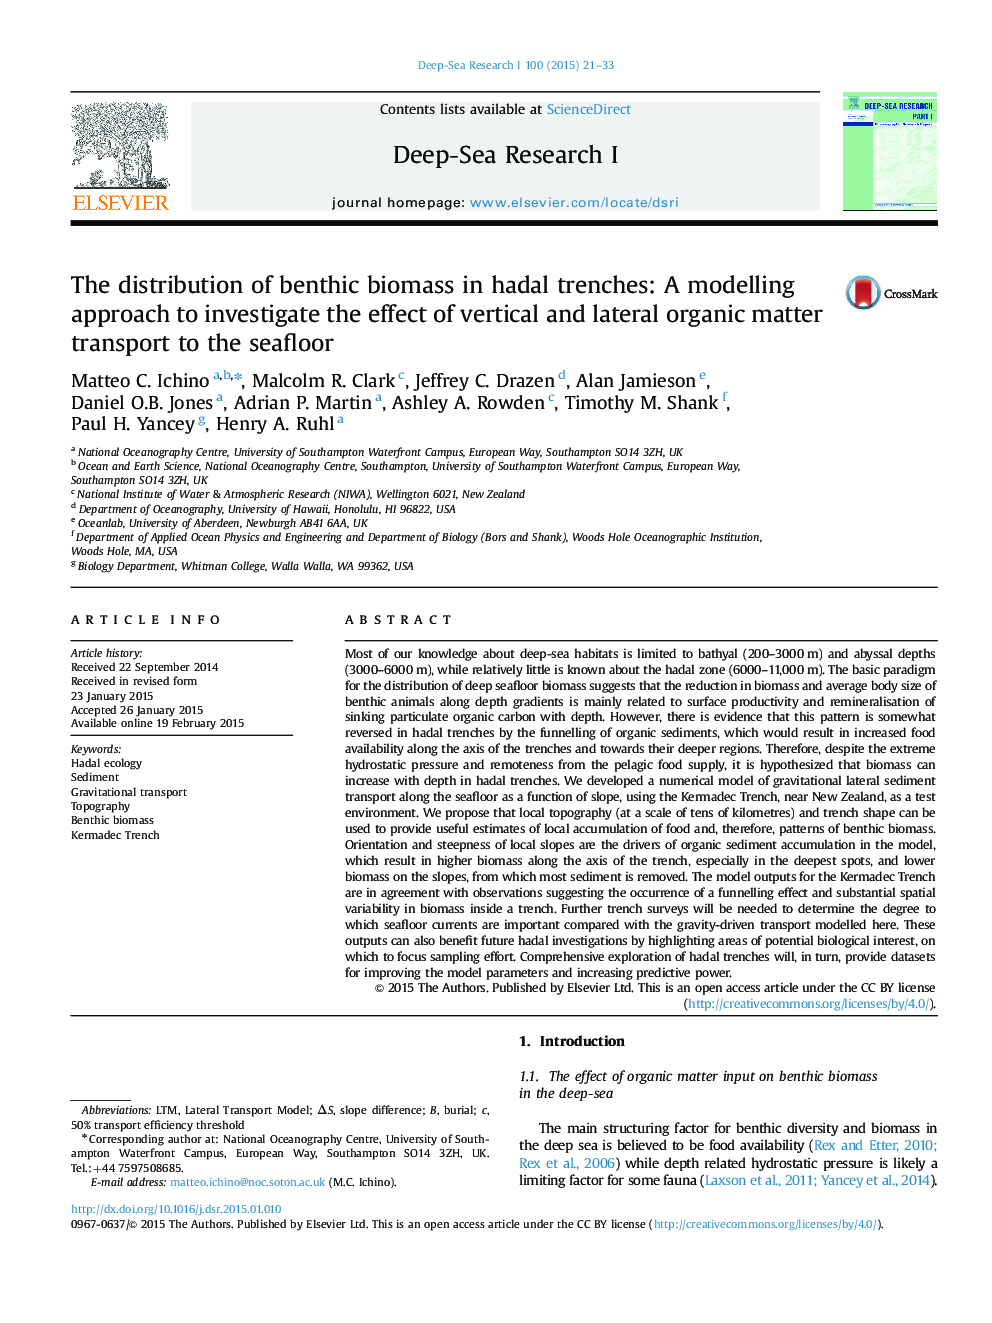 توزیع بیوماس بنتون در ترانشه هایدال: یک رویکرد مدل سازی برای بررسی اثر حمل و نقل مواد آلی عمودی و جانبی به دریاچه 